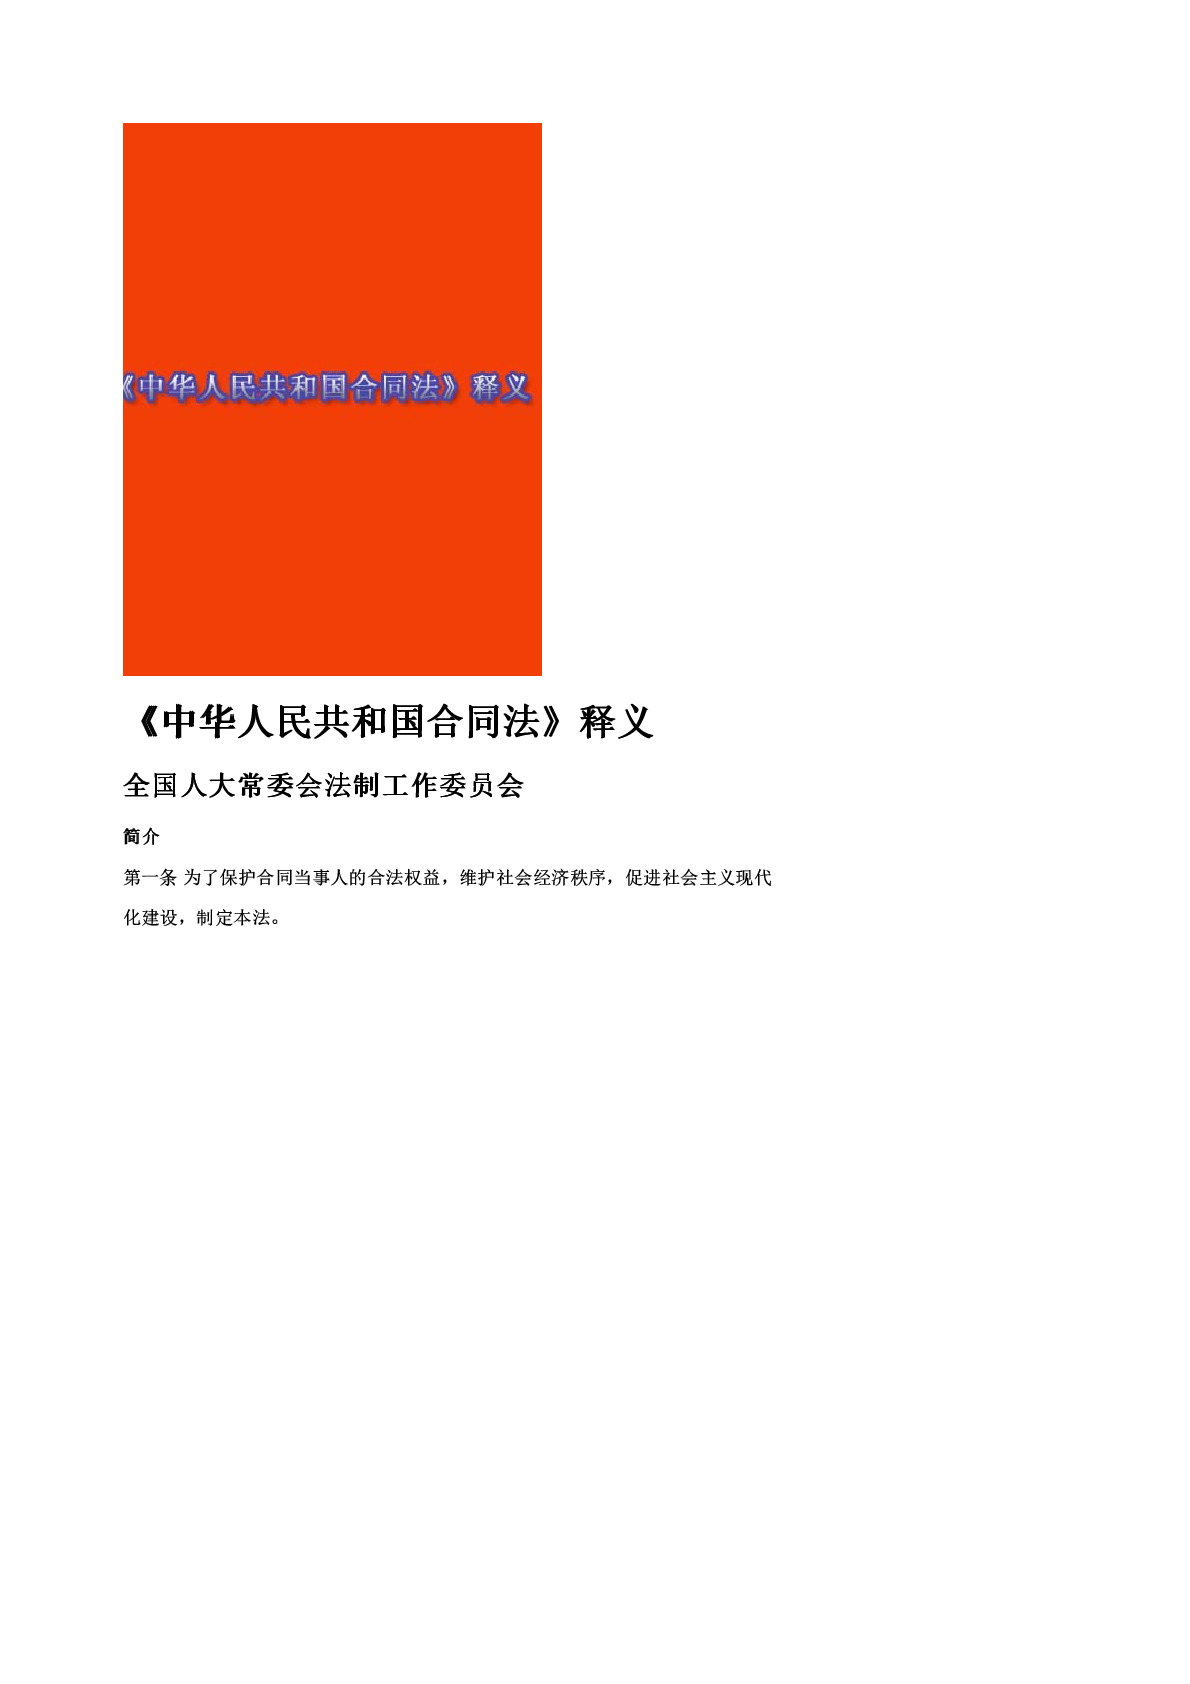 《中华人民共和国合同法》释义